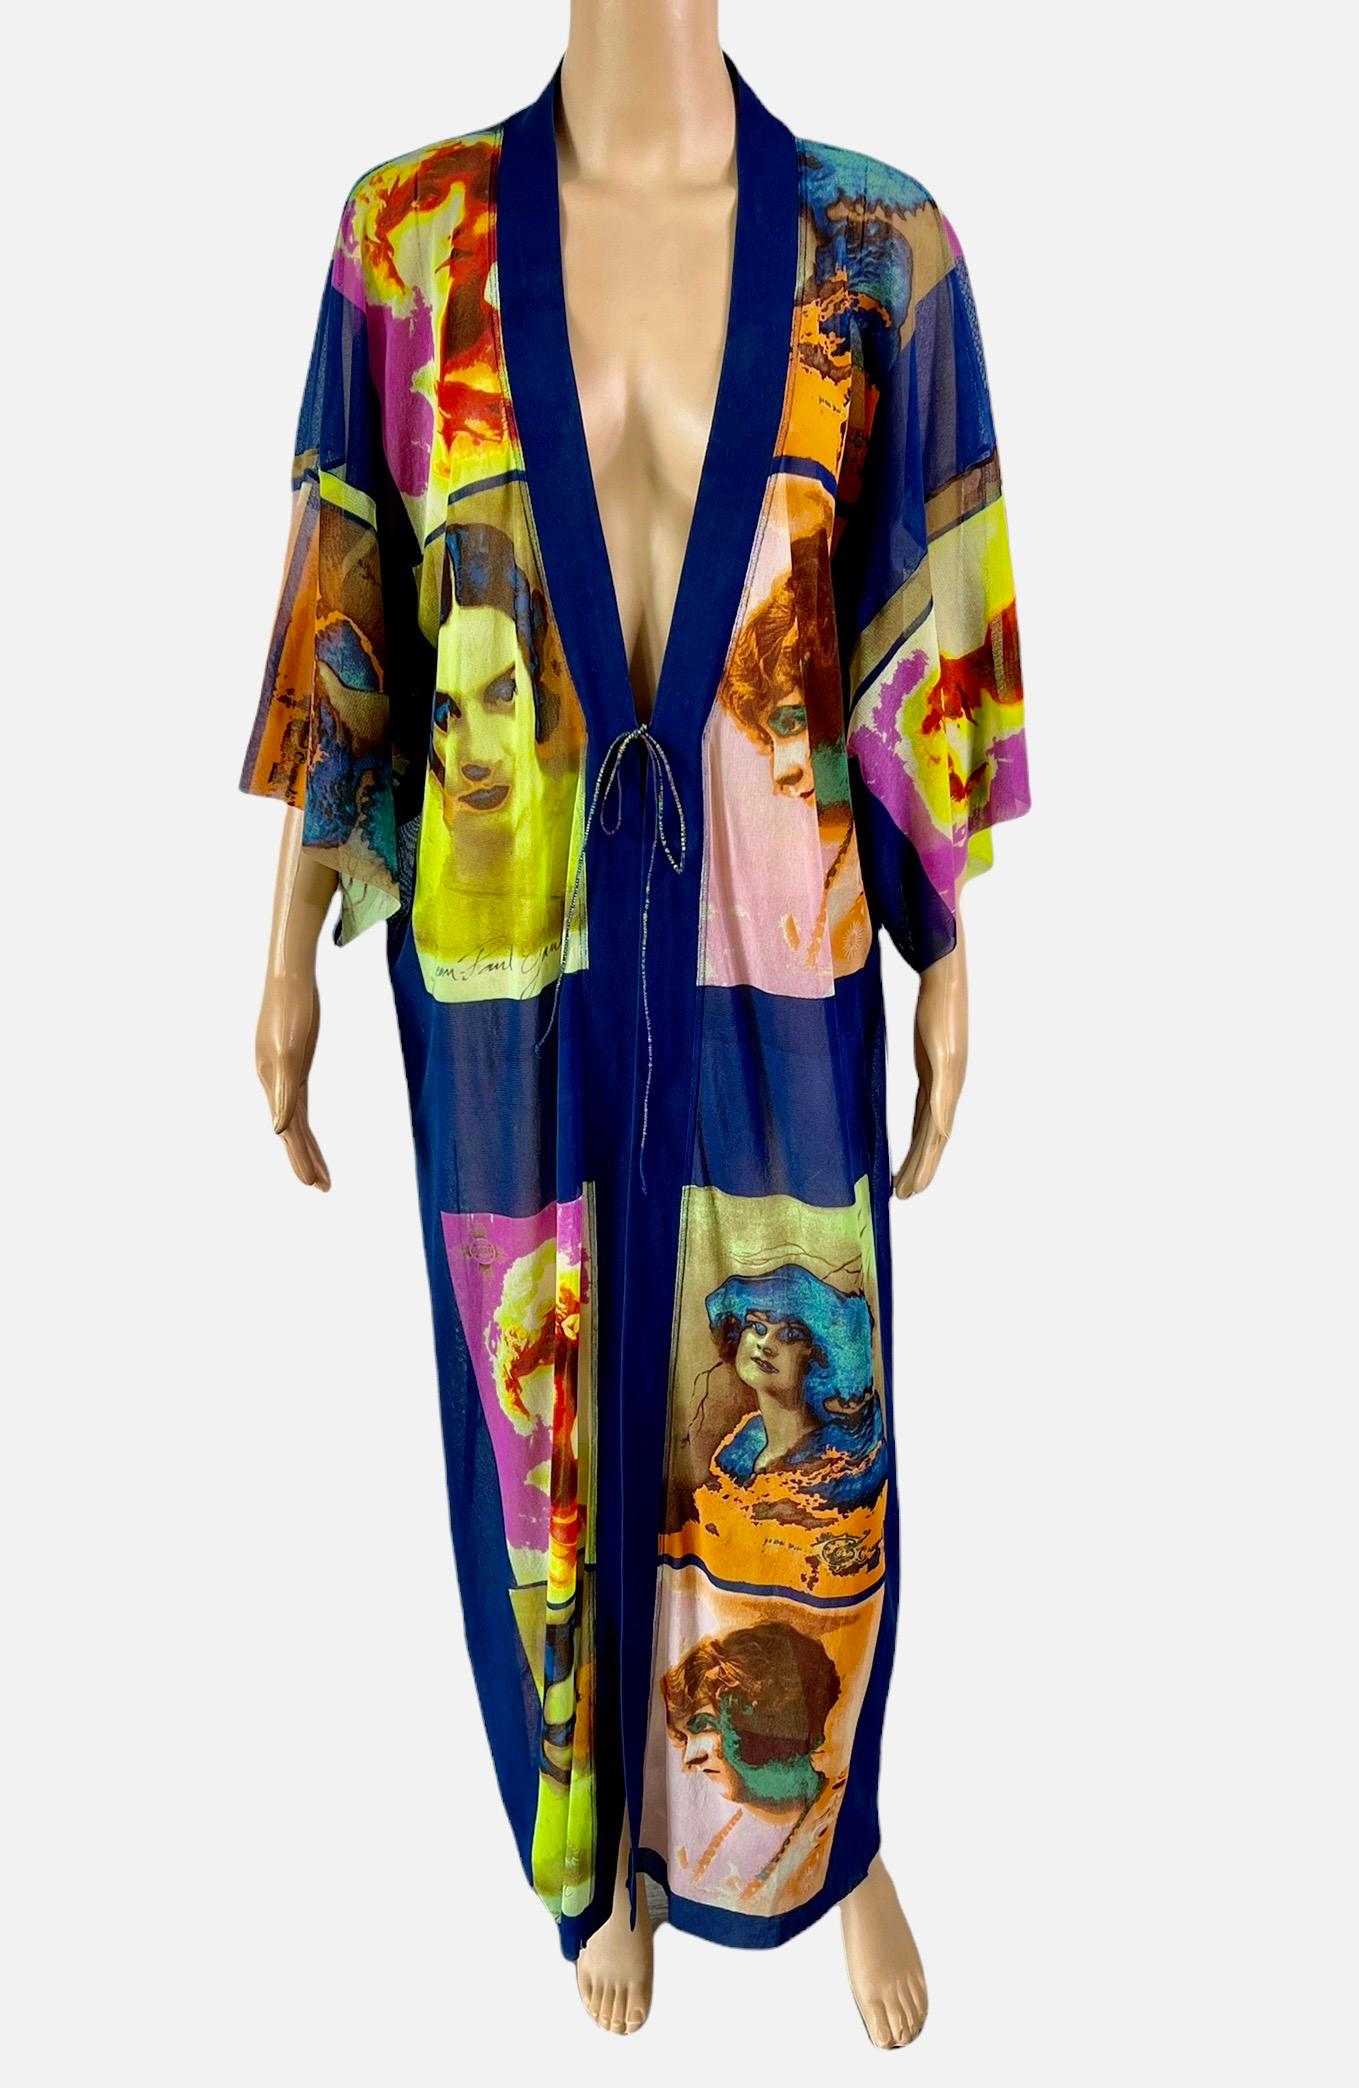 Jean Paul Gaultier Soleil S/S 2002 Vintage “Portraits” Mesh Maxi Dress Kimono Size S


